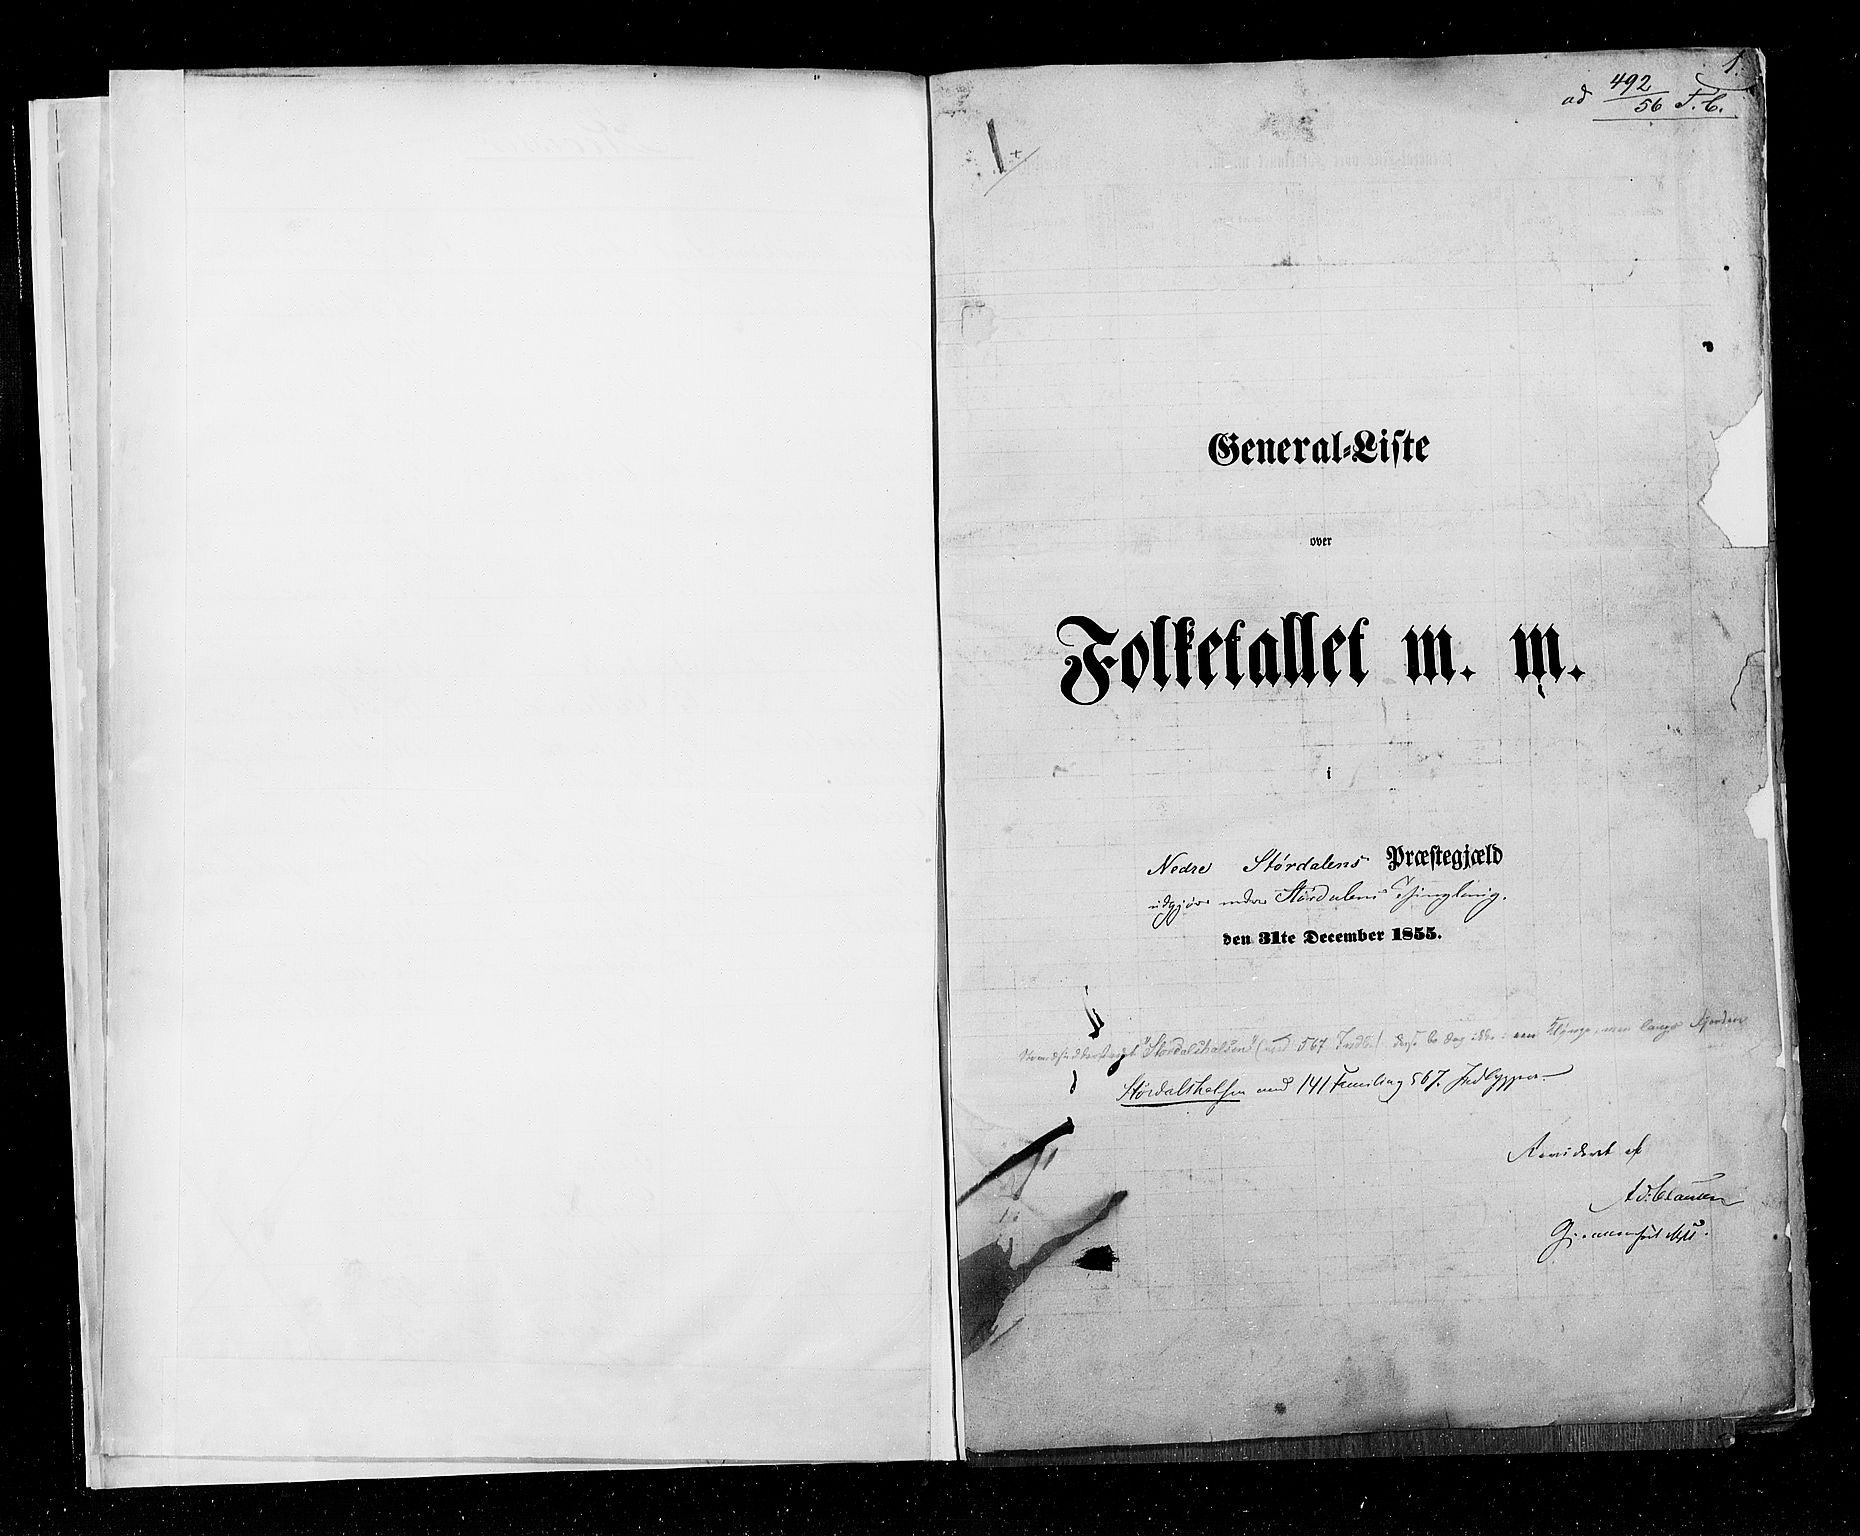 RA, Folketellingen 1855, bind 6A: Nordre Trondhjem amt og Nordland amt, 1855, s. 1